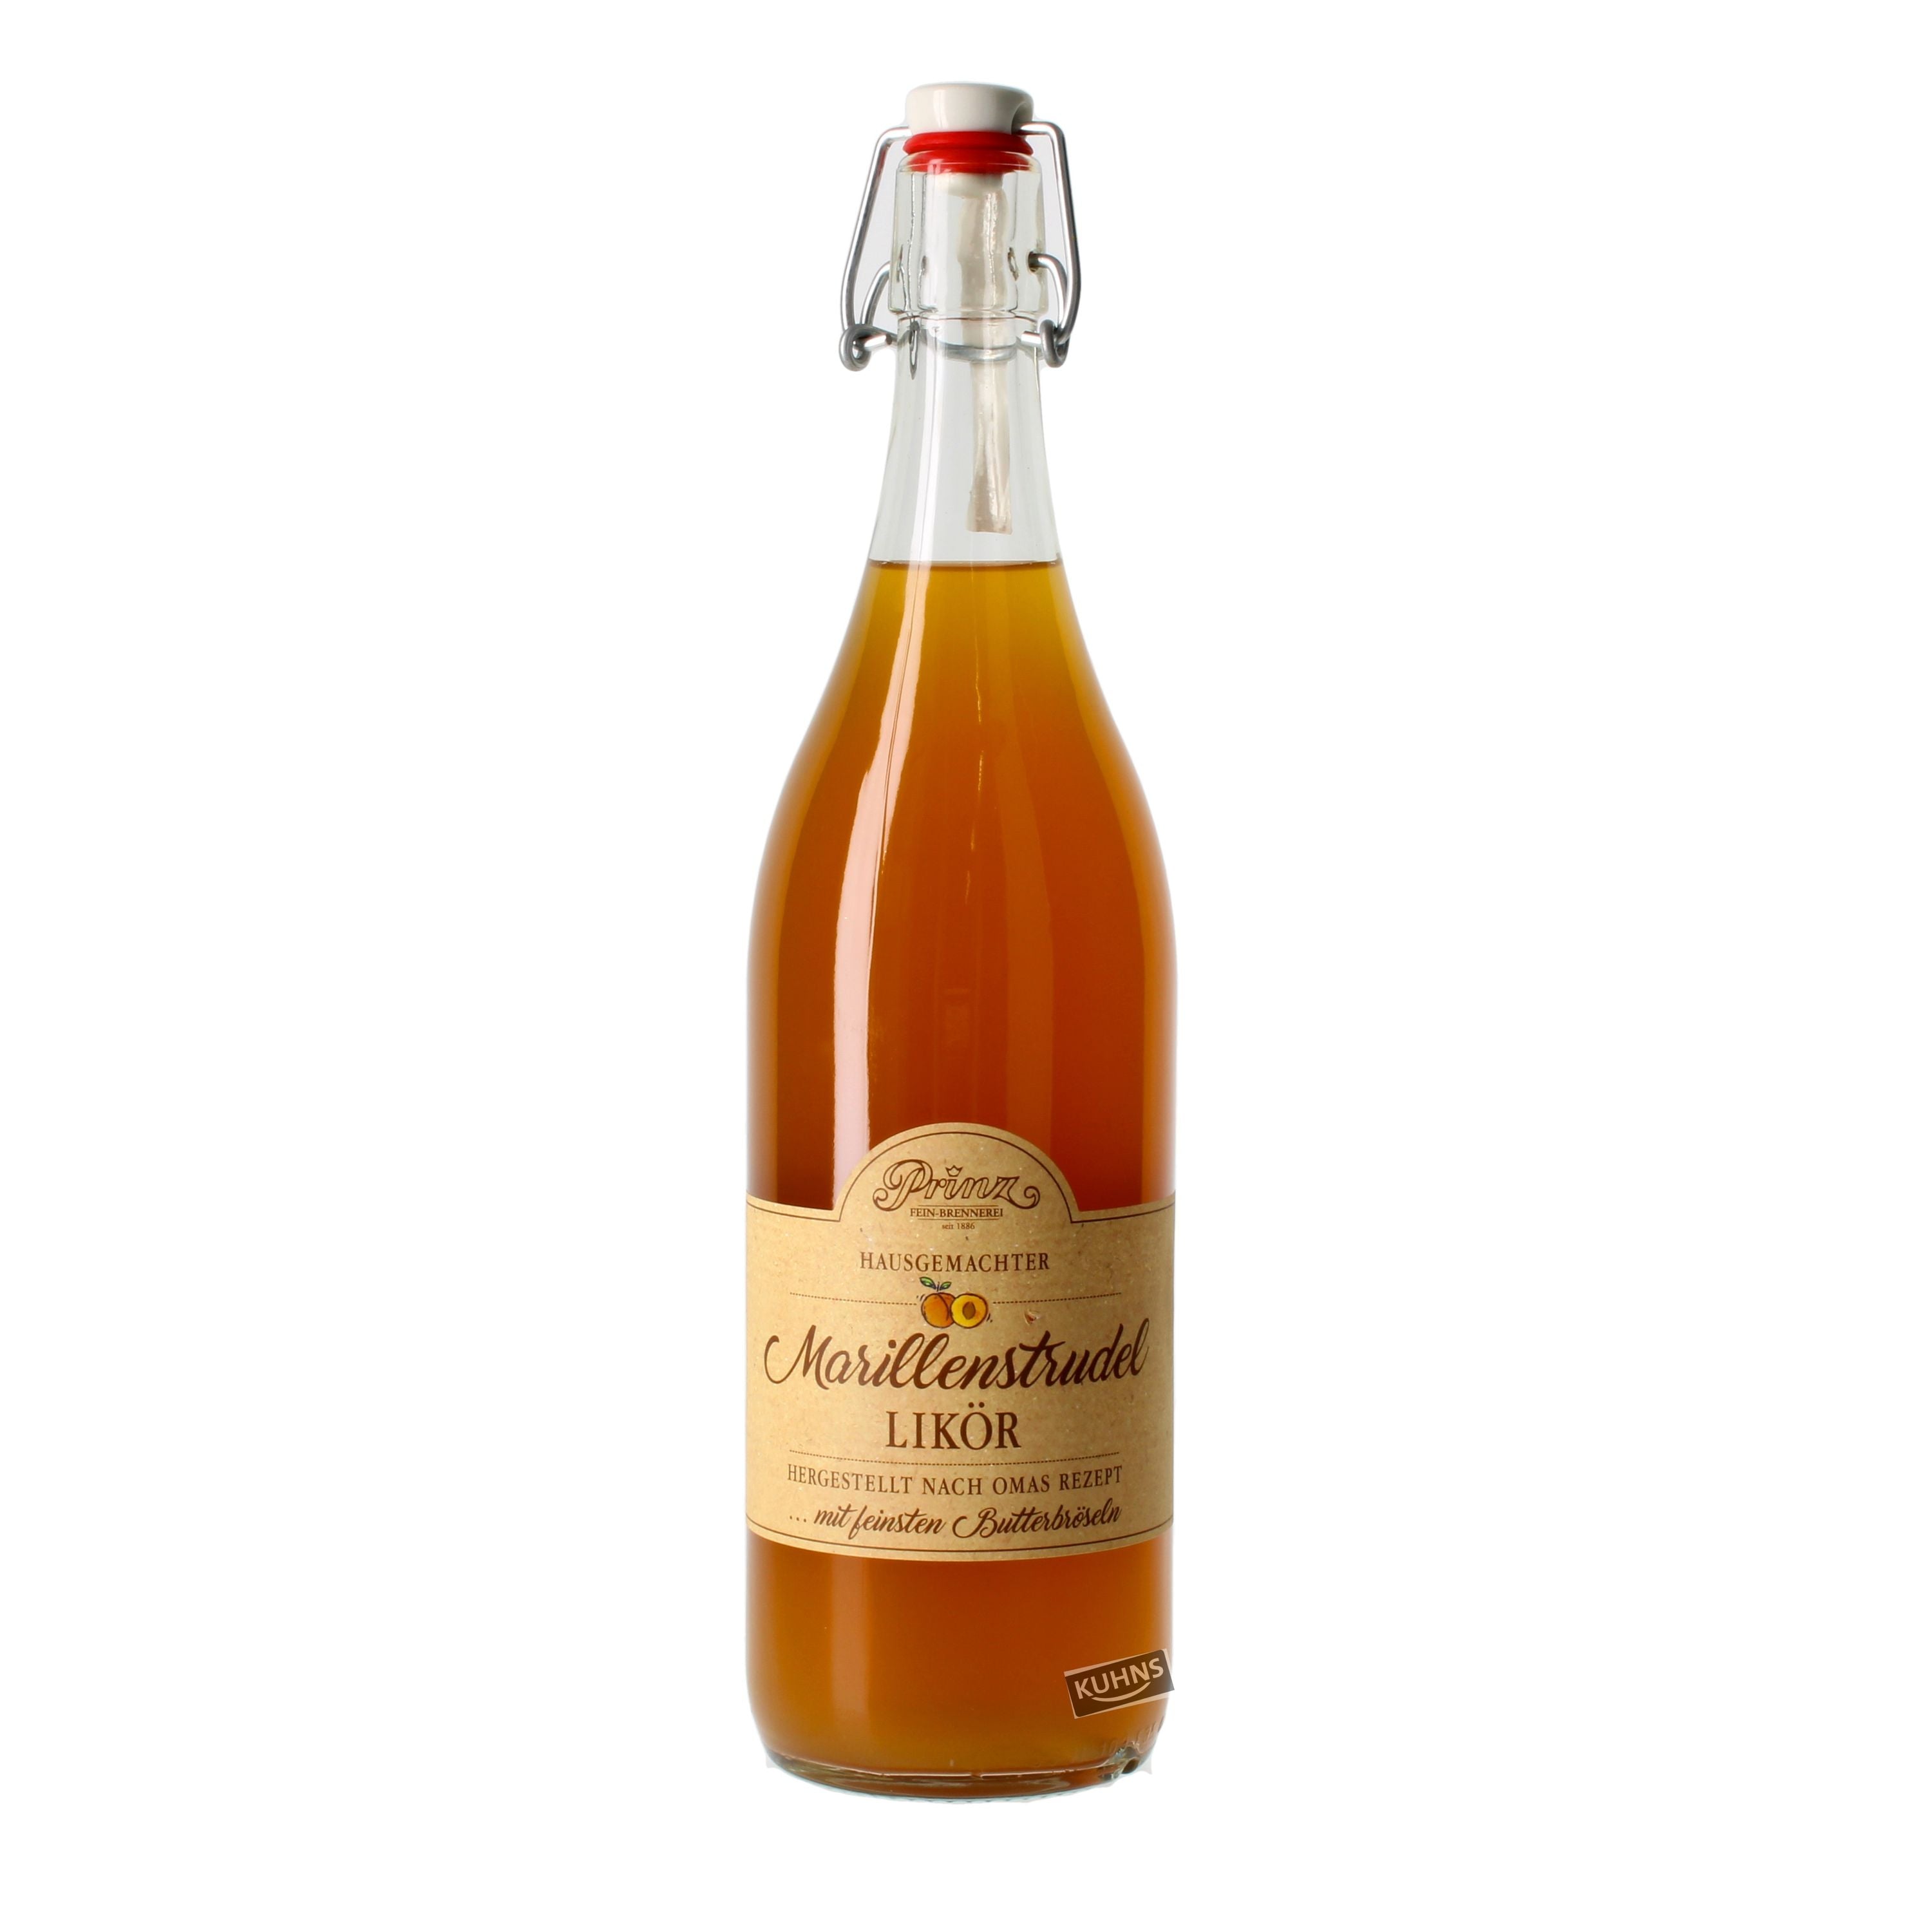 Prinz apricot strudel liqueur 1.0l, alc. 16% by volume